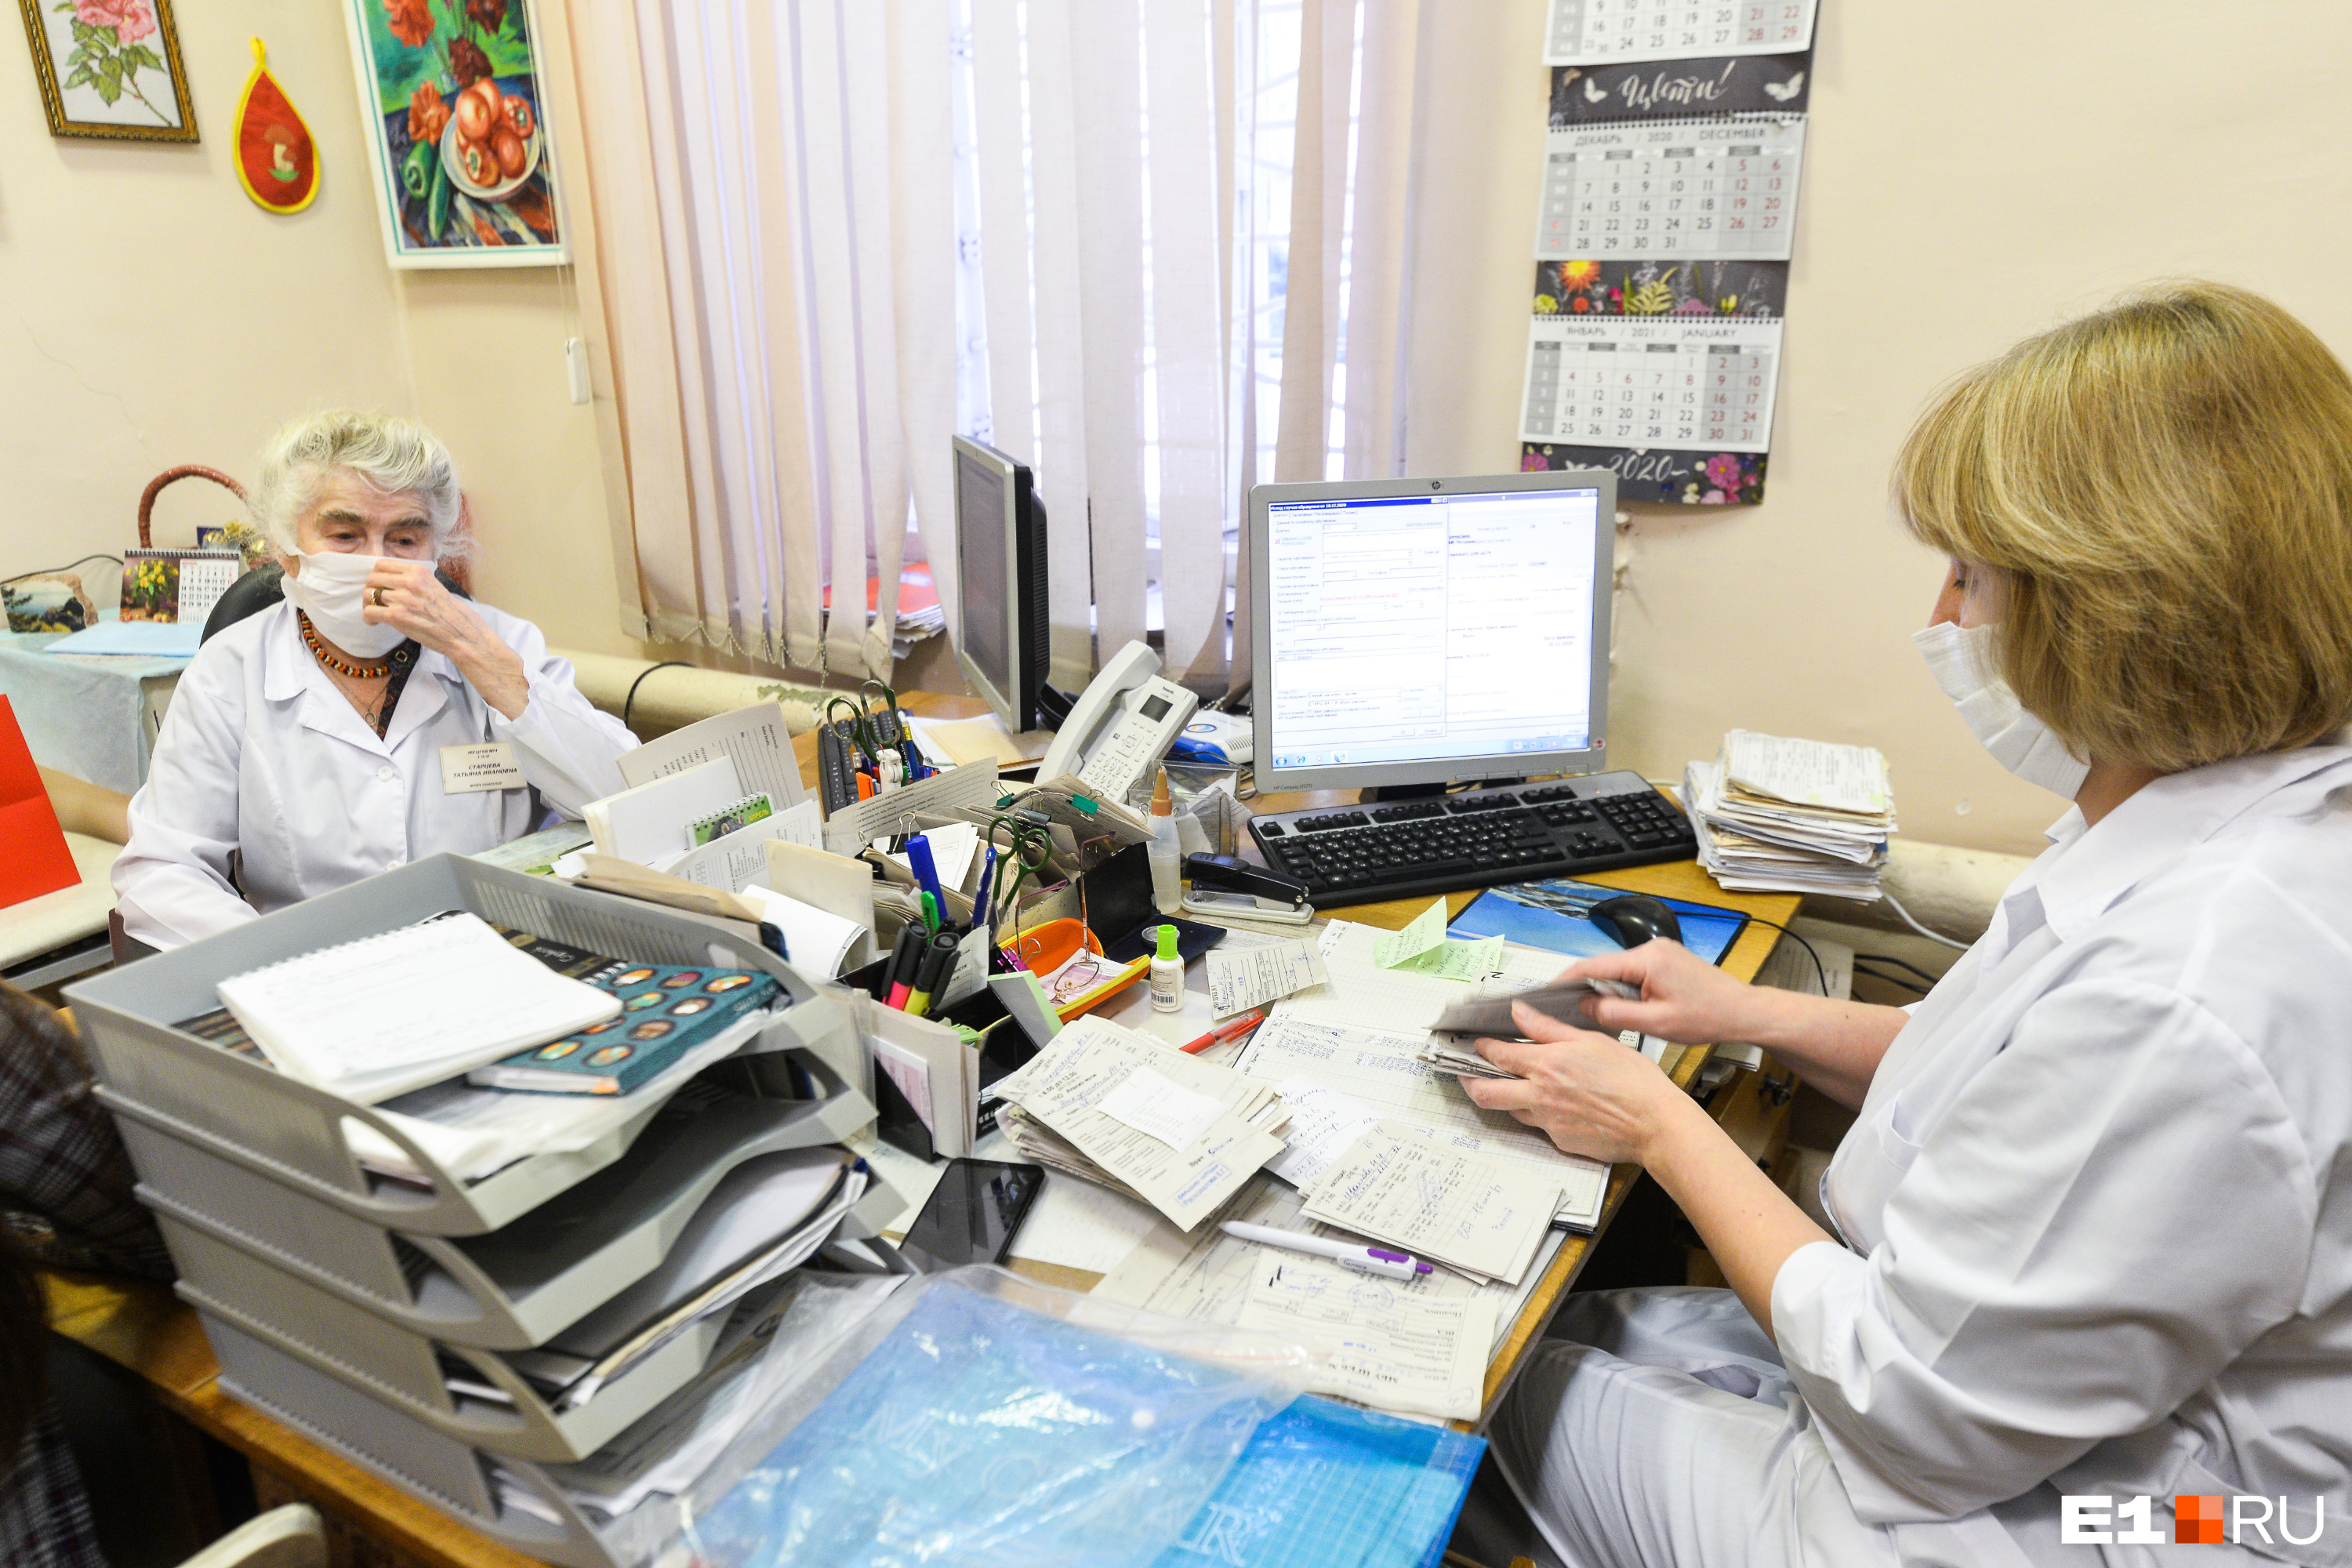 По мнению медика, главная проблема онкологии в Екатеринбурге — кадровый дефицит врачей. Благодаря профилактике рака специалисты находят опухоли на ранней стадии, когда они поддаются лечению